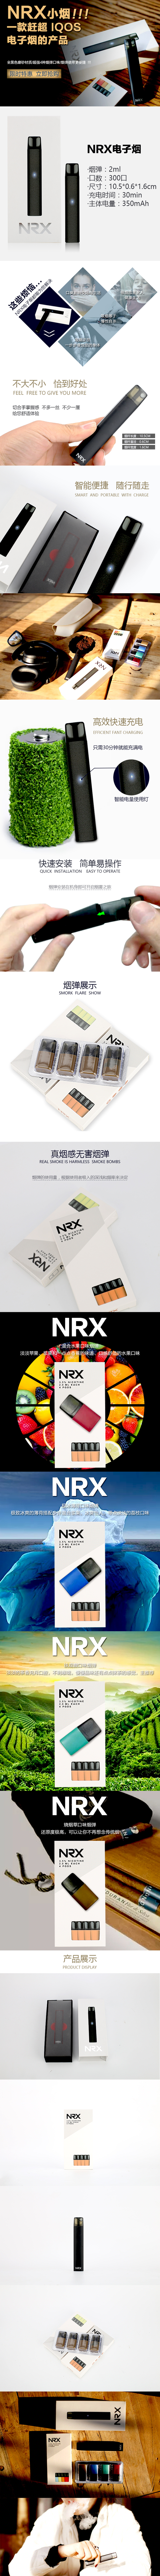 淘宝美工小霍迪NRX小烟 电子烟产品作品